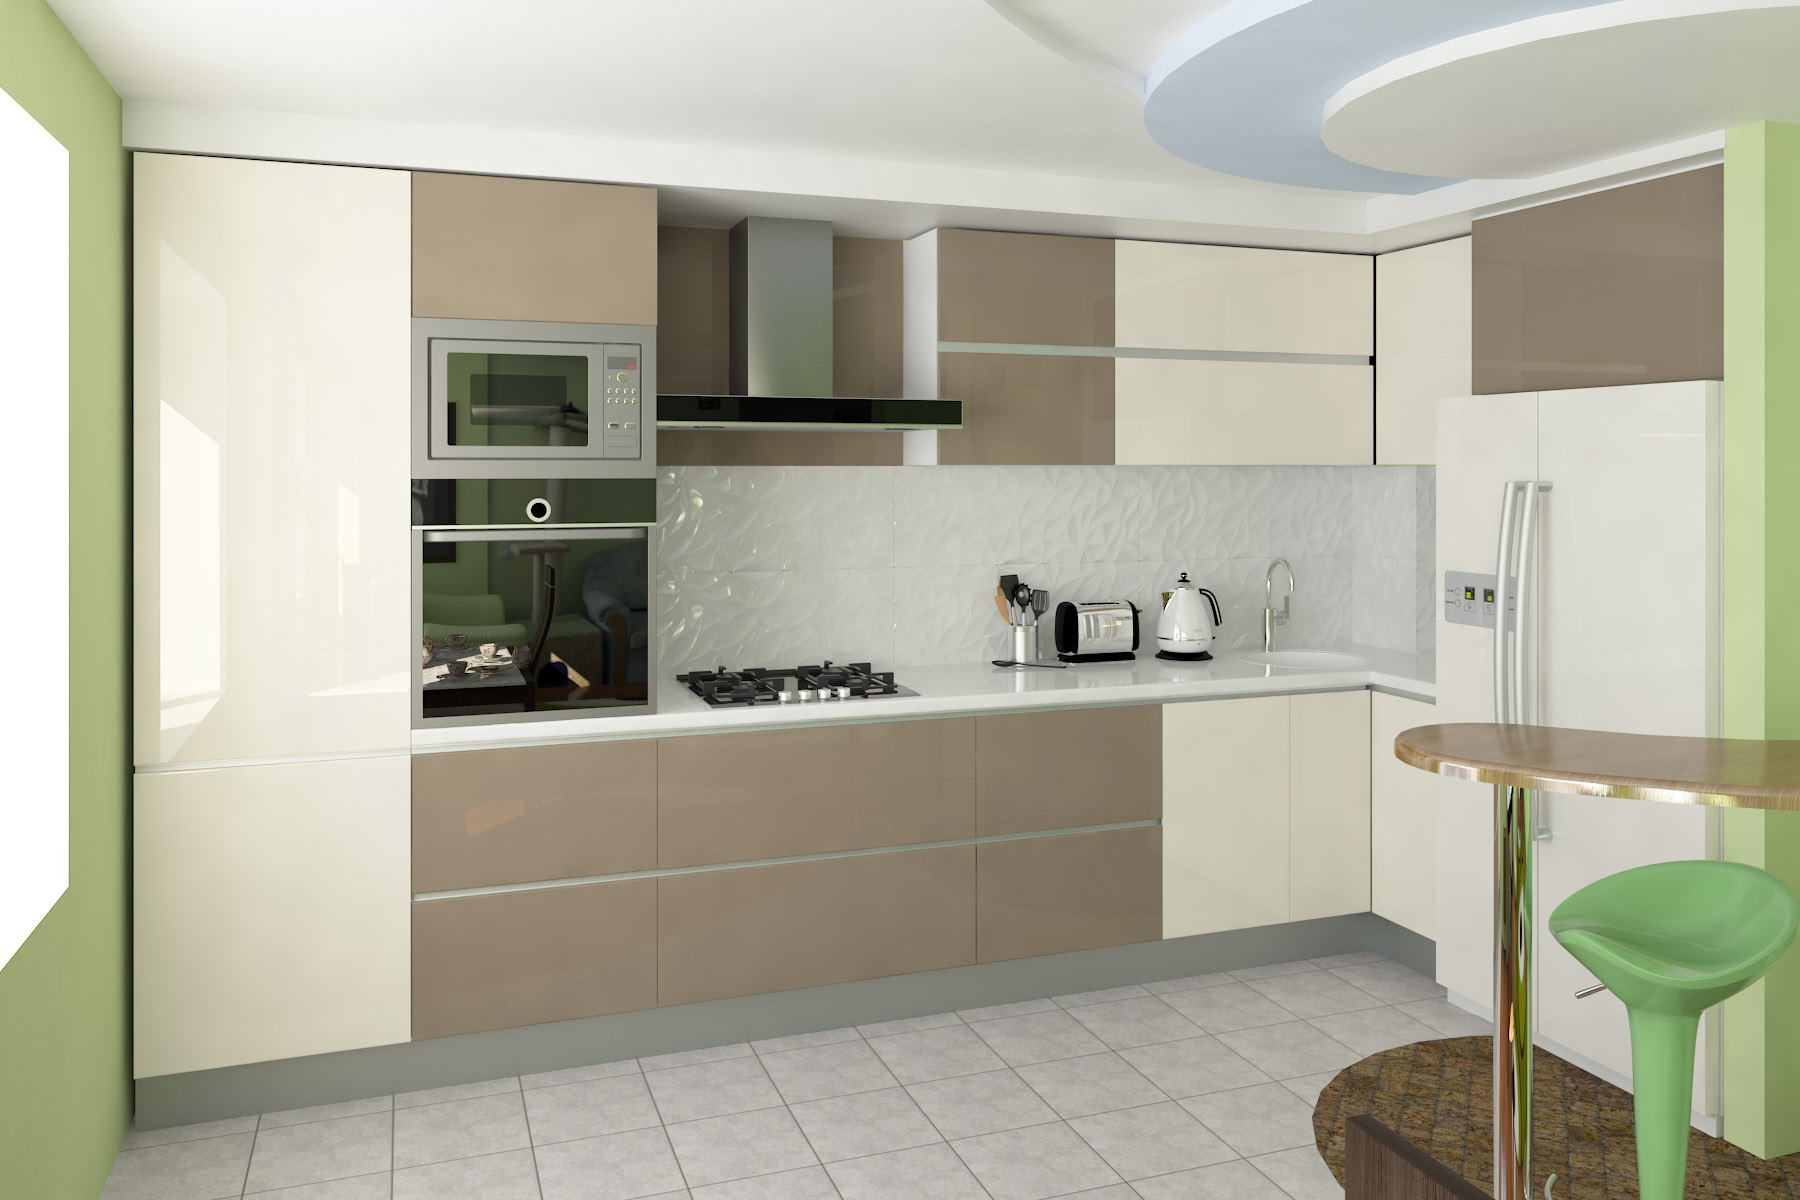 Кухня акрил угловая 12 кв м цвет коричневый с бежевым и с большим холодильником